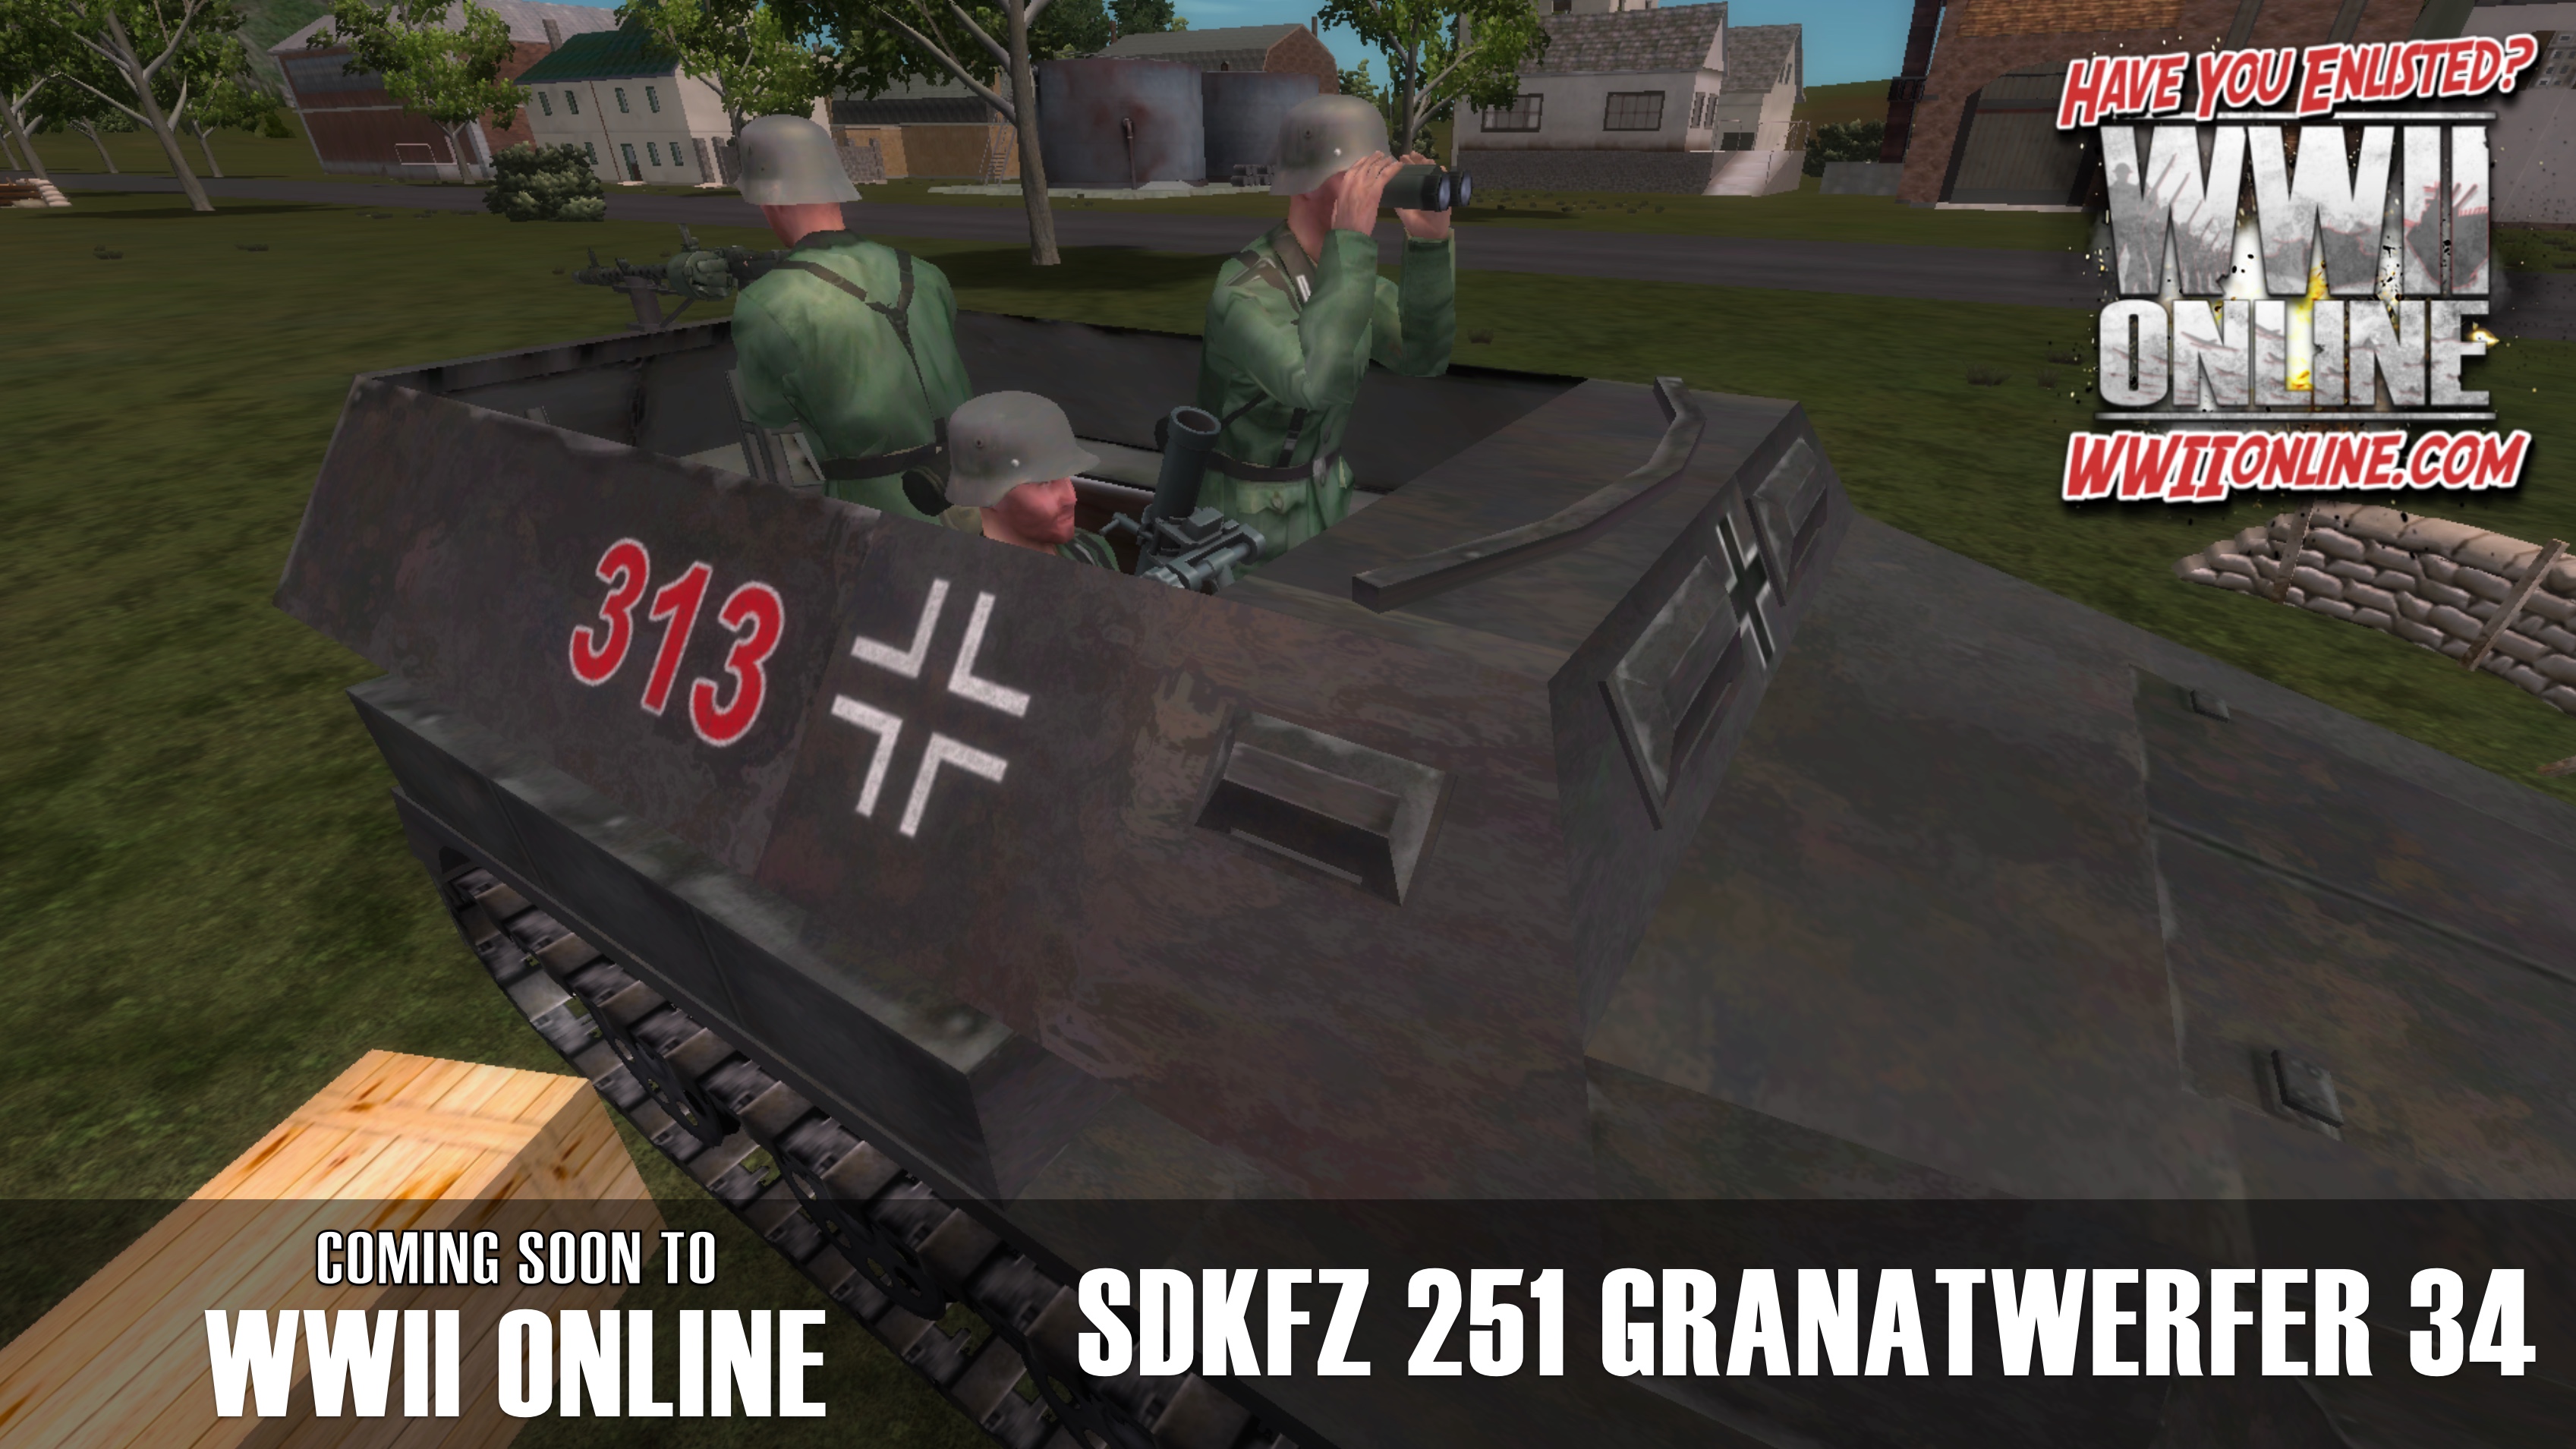 Granatwerfer 34 on the Skdfz 251 HT